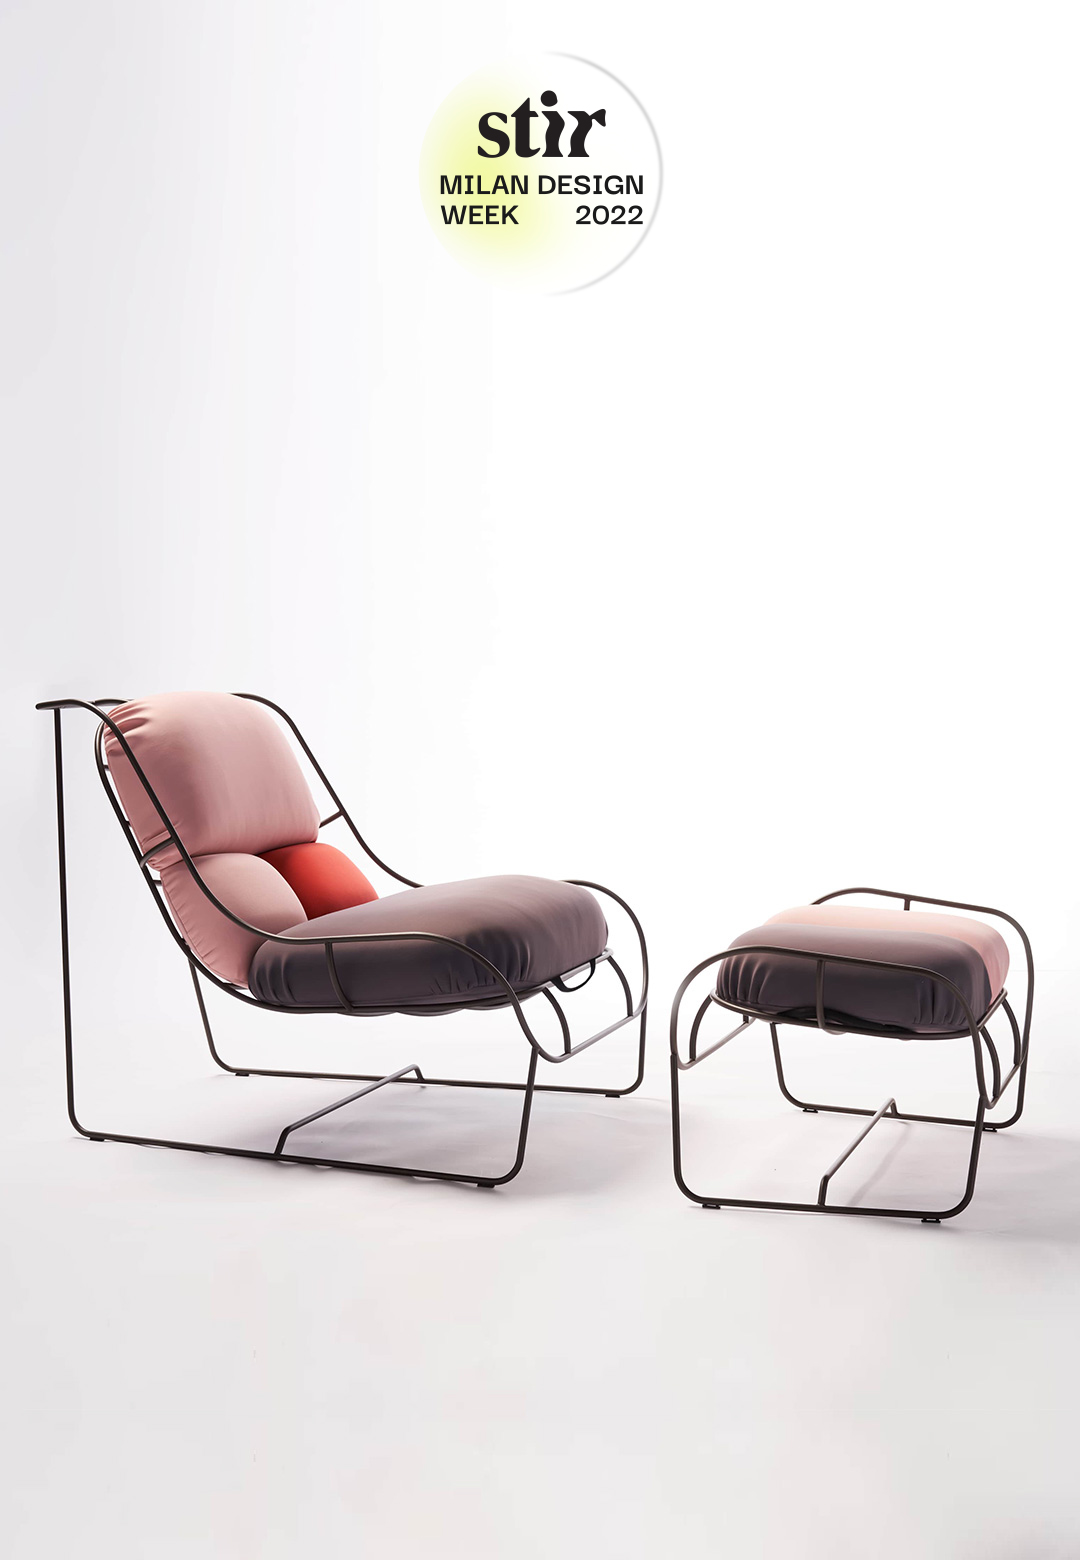 Nigel Coates unveils versatile armchair at Design Variation, Fuorisalone 2022